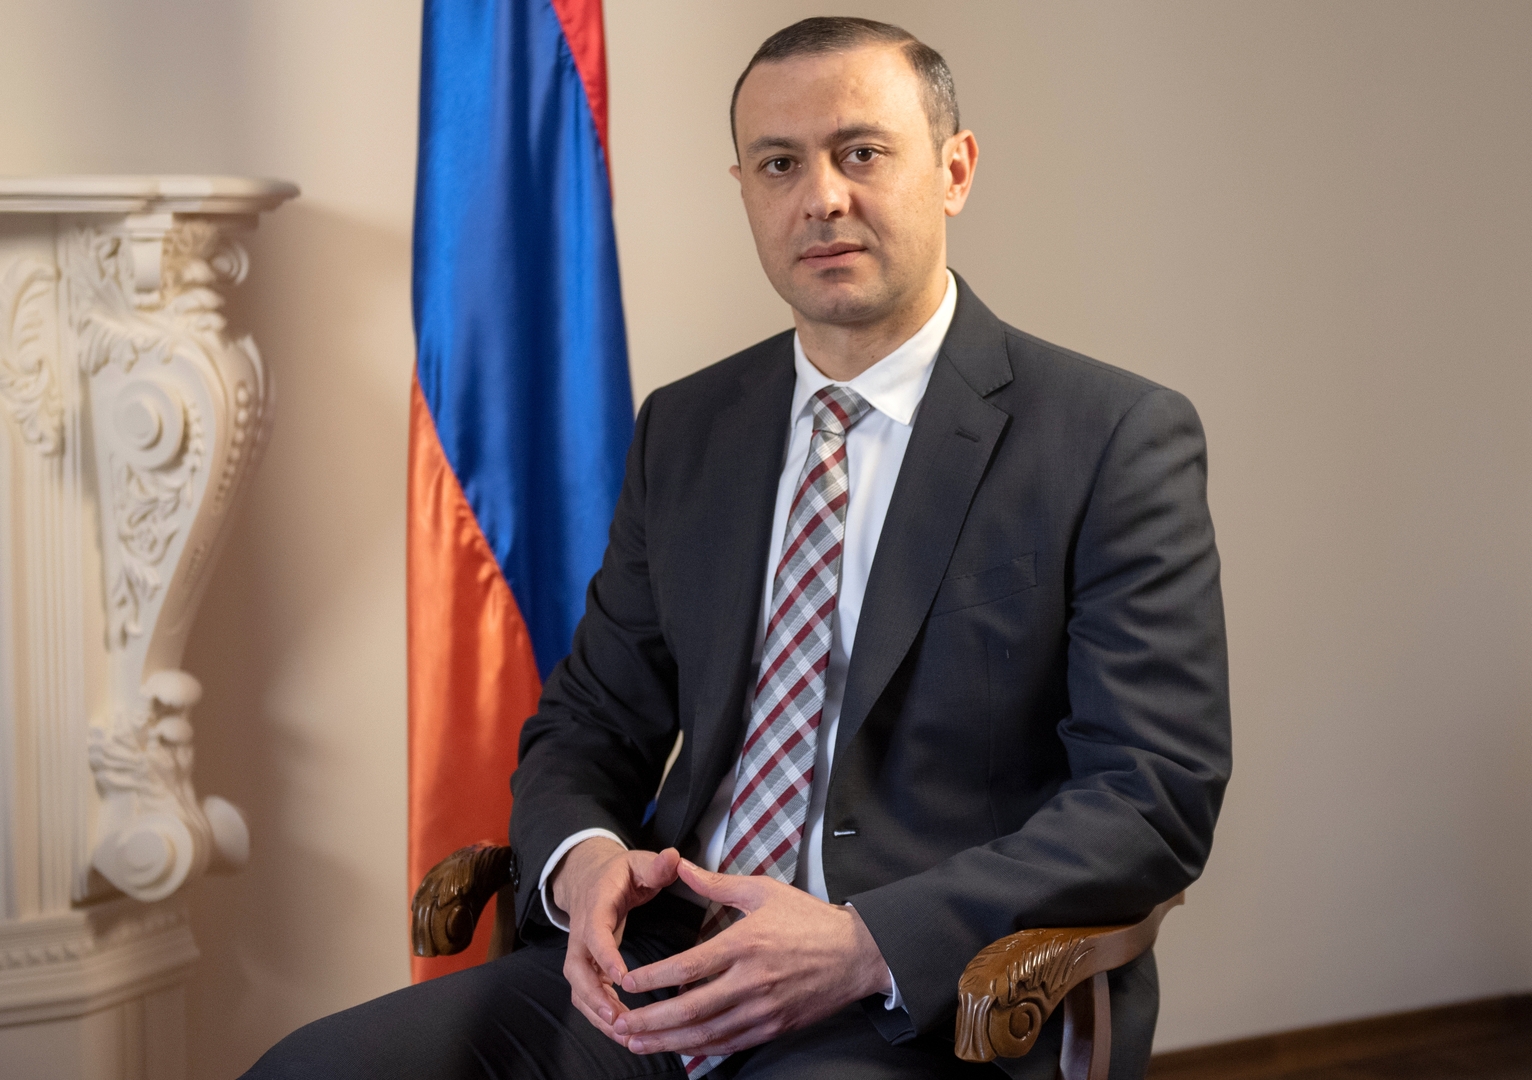 أرمينيا تطلب من روسيا مساعدتها في الدفاع عن أراضيها بناء على معاهدة عام 1997